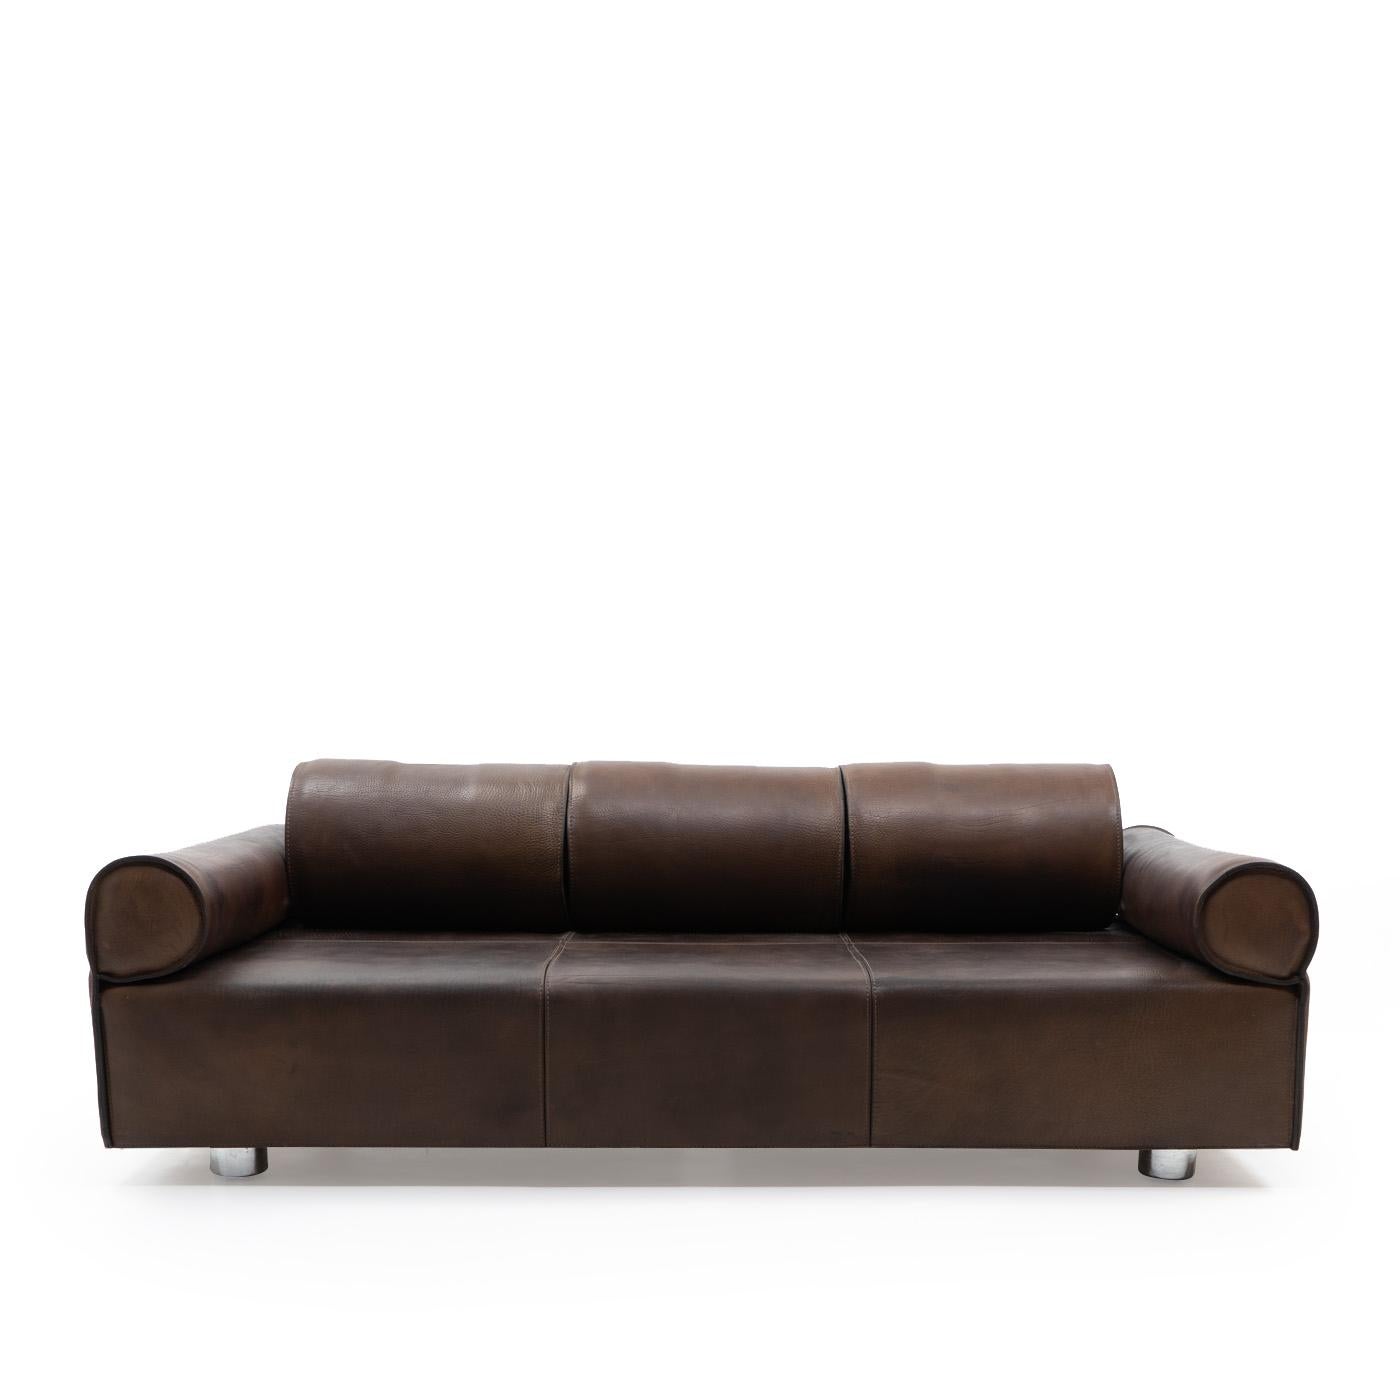 Mid-Century Modern Italian Design Marzio Cecchi Three-seater Sofa in Brown Buffalo Leather, 1970s For Sale